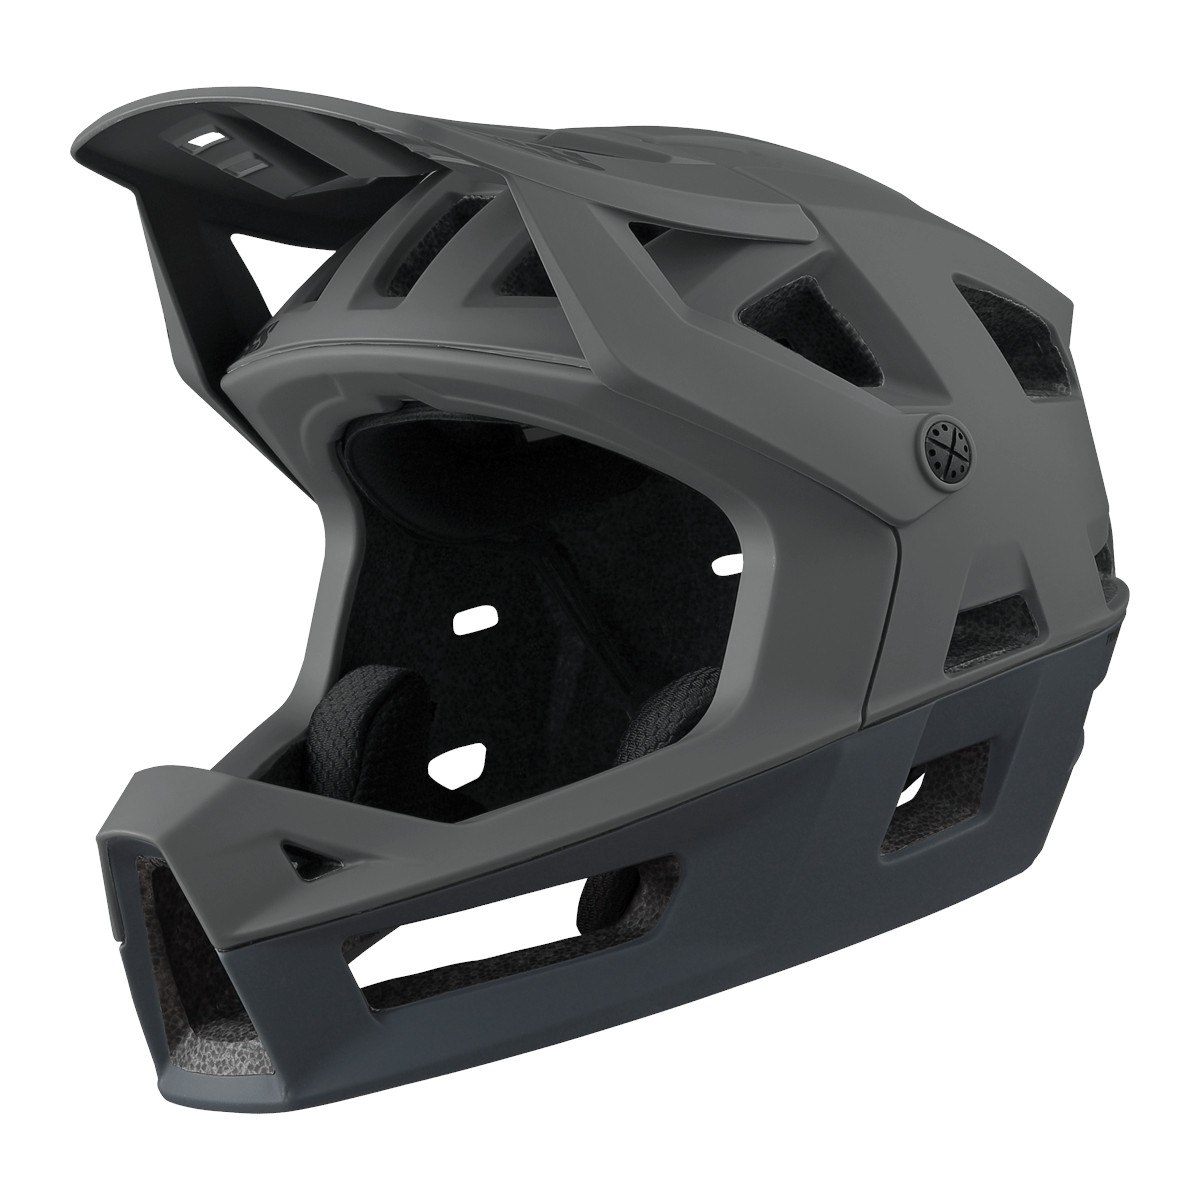 Bild von iXS Trigger Fullface Helm - graphit